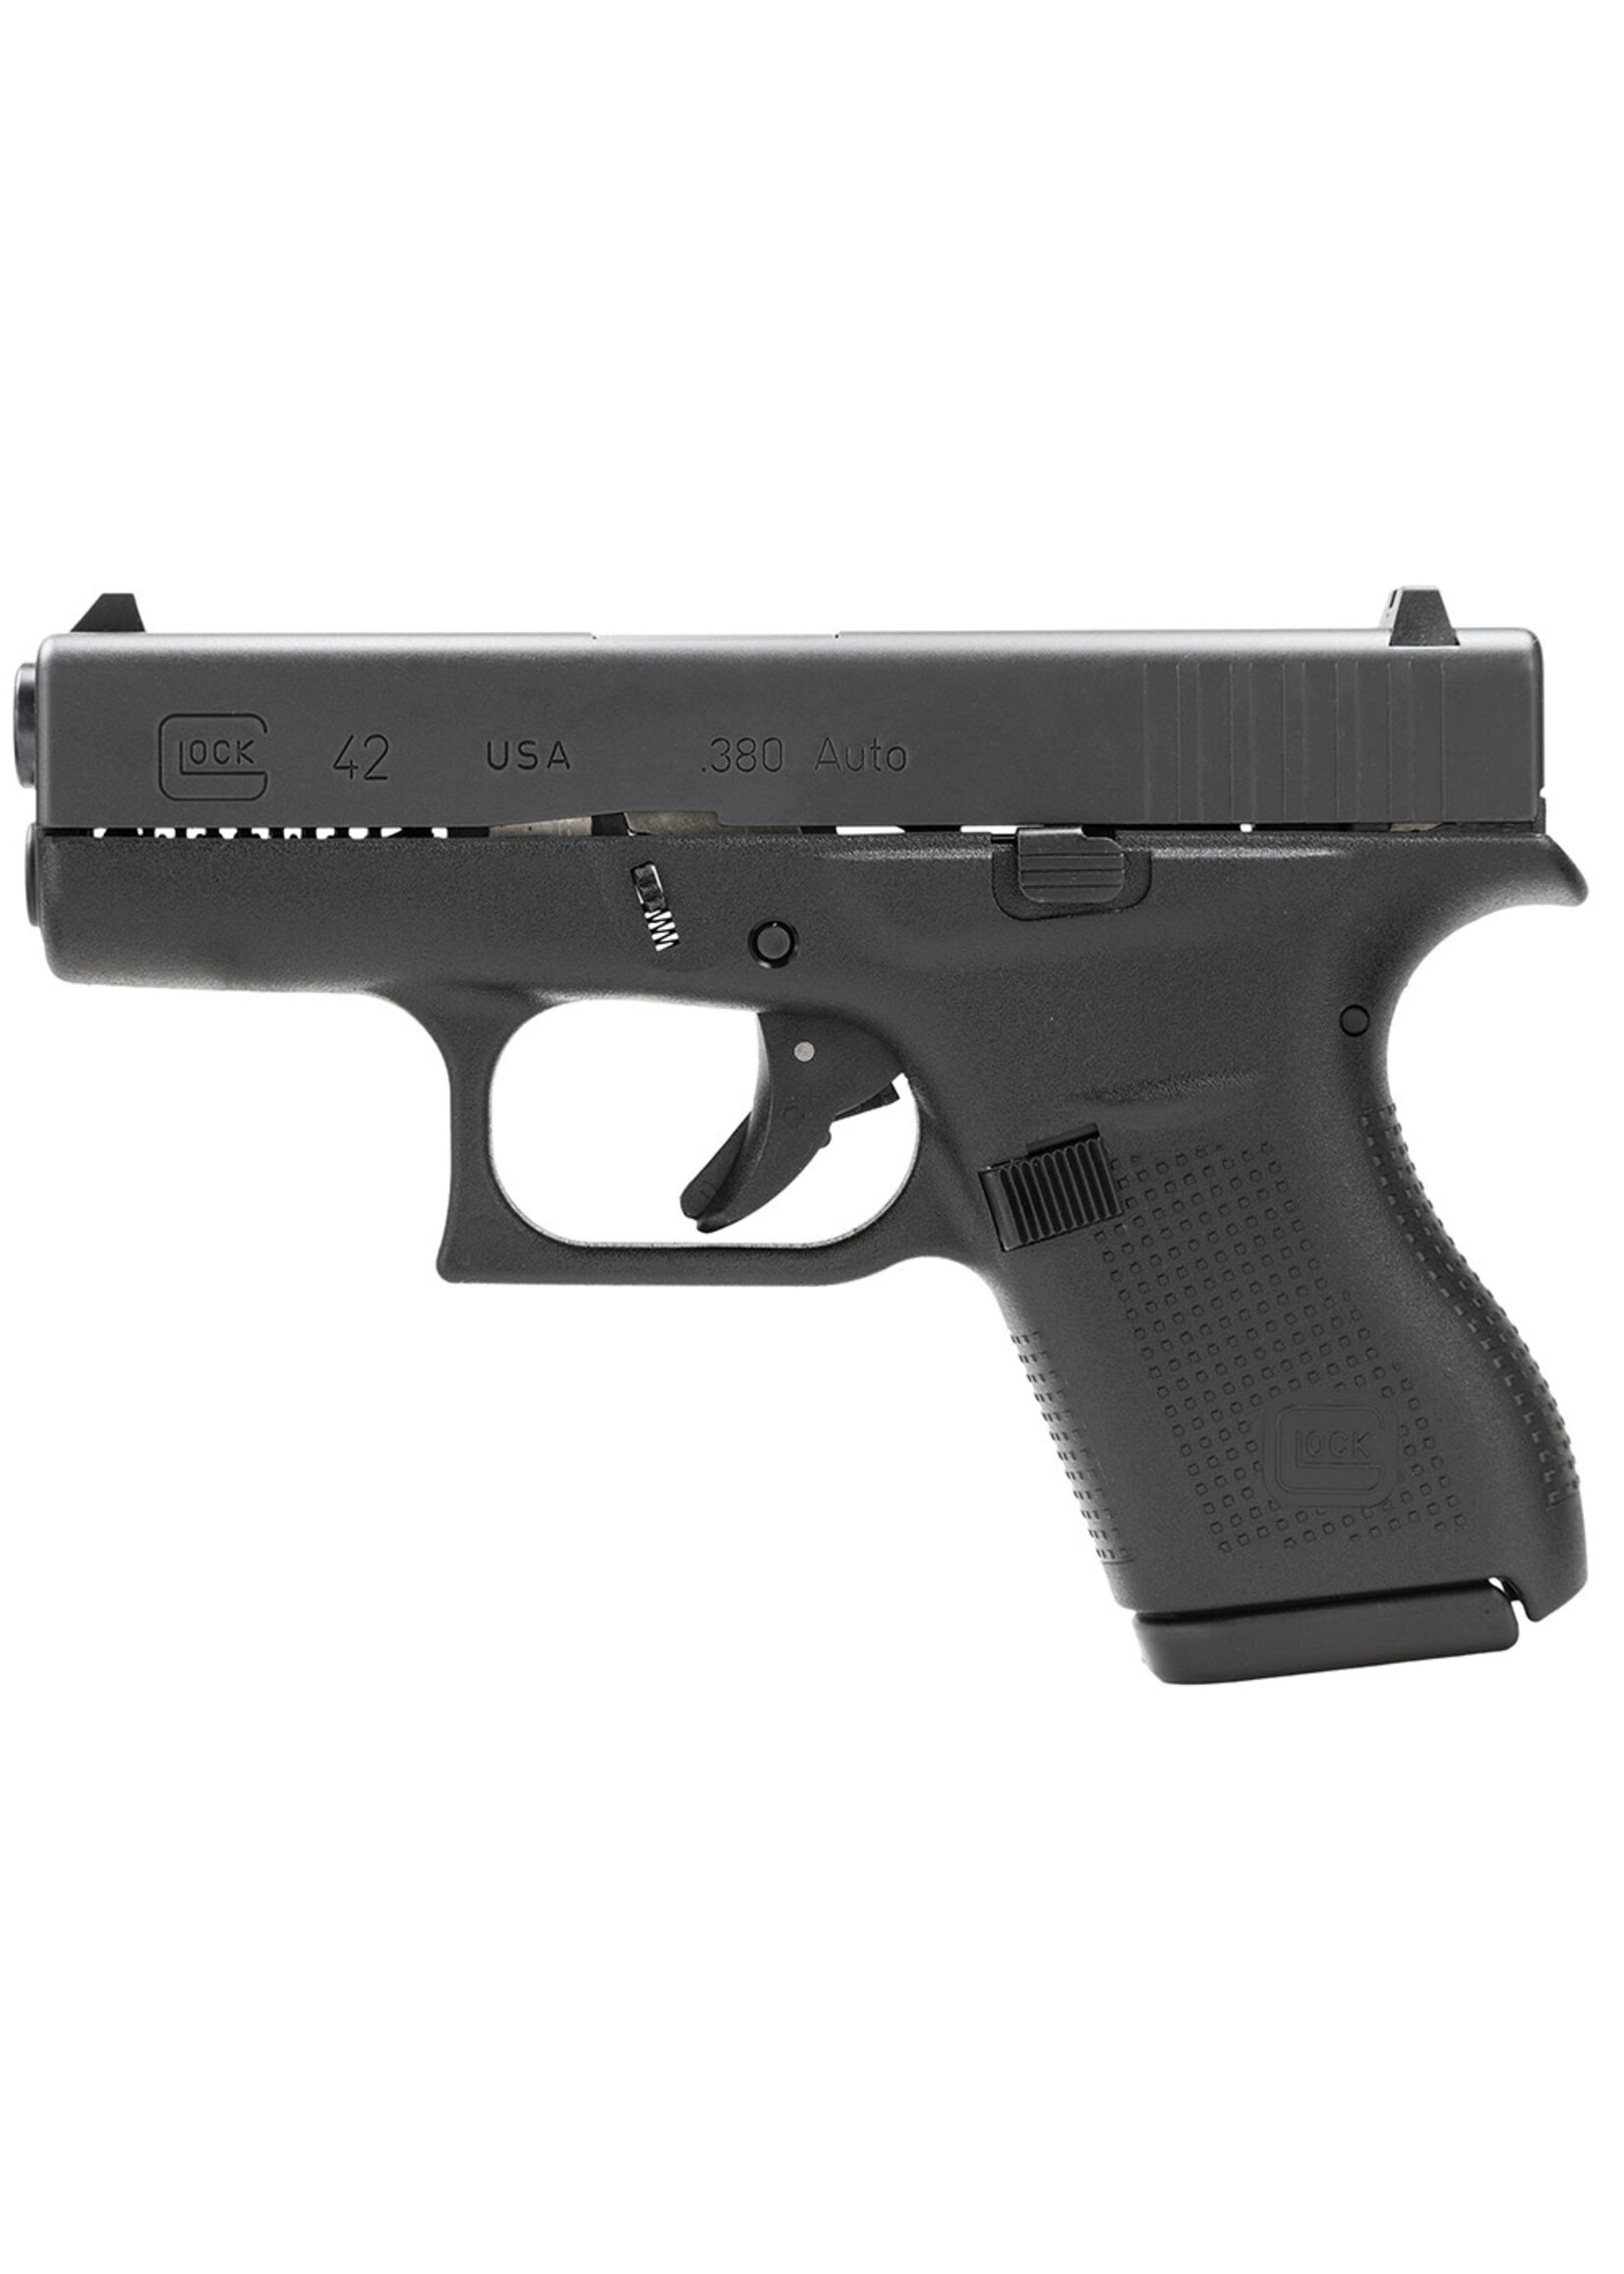 Glock Glock UI4250201 G42 Gen3 Subcompact 380 ACP 3.25" Barrel 6+1, Black Frame & Slide, Rough Textured Grip, Safe Action Trigger (US Made)